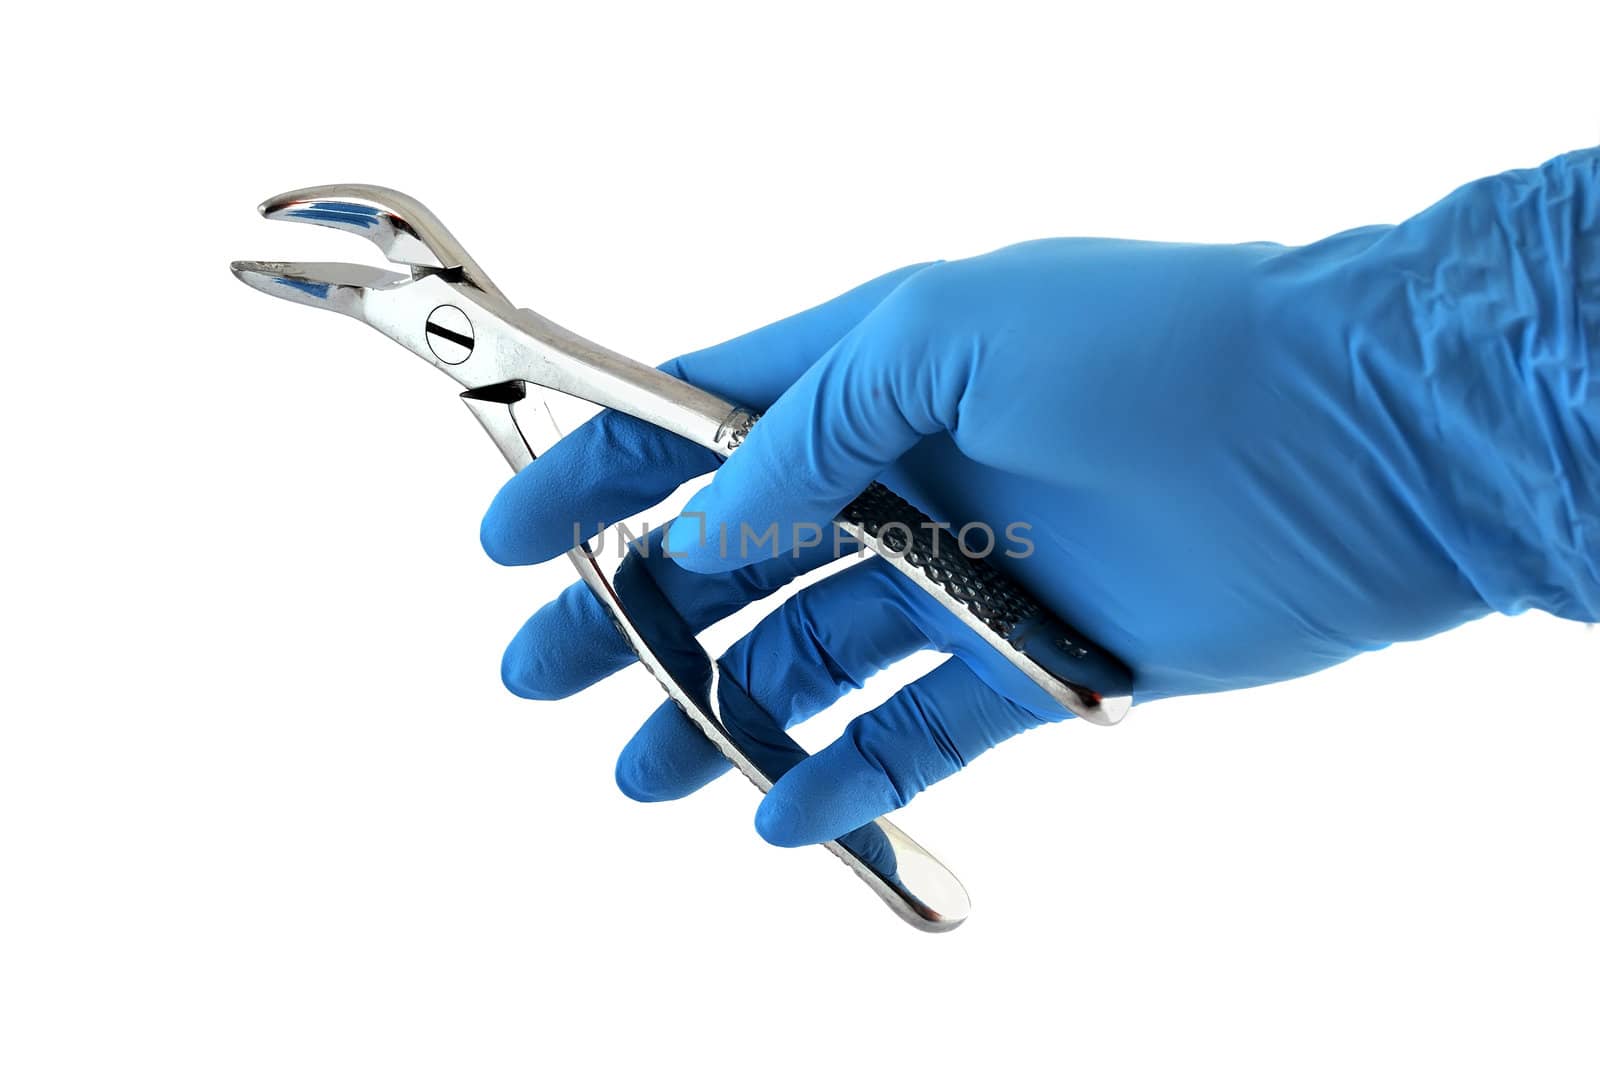 dental forceps in hand  by vetkit